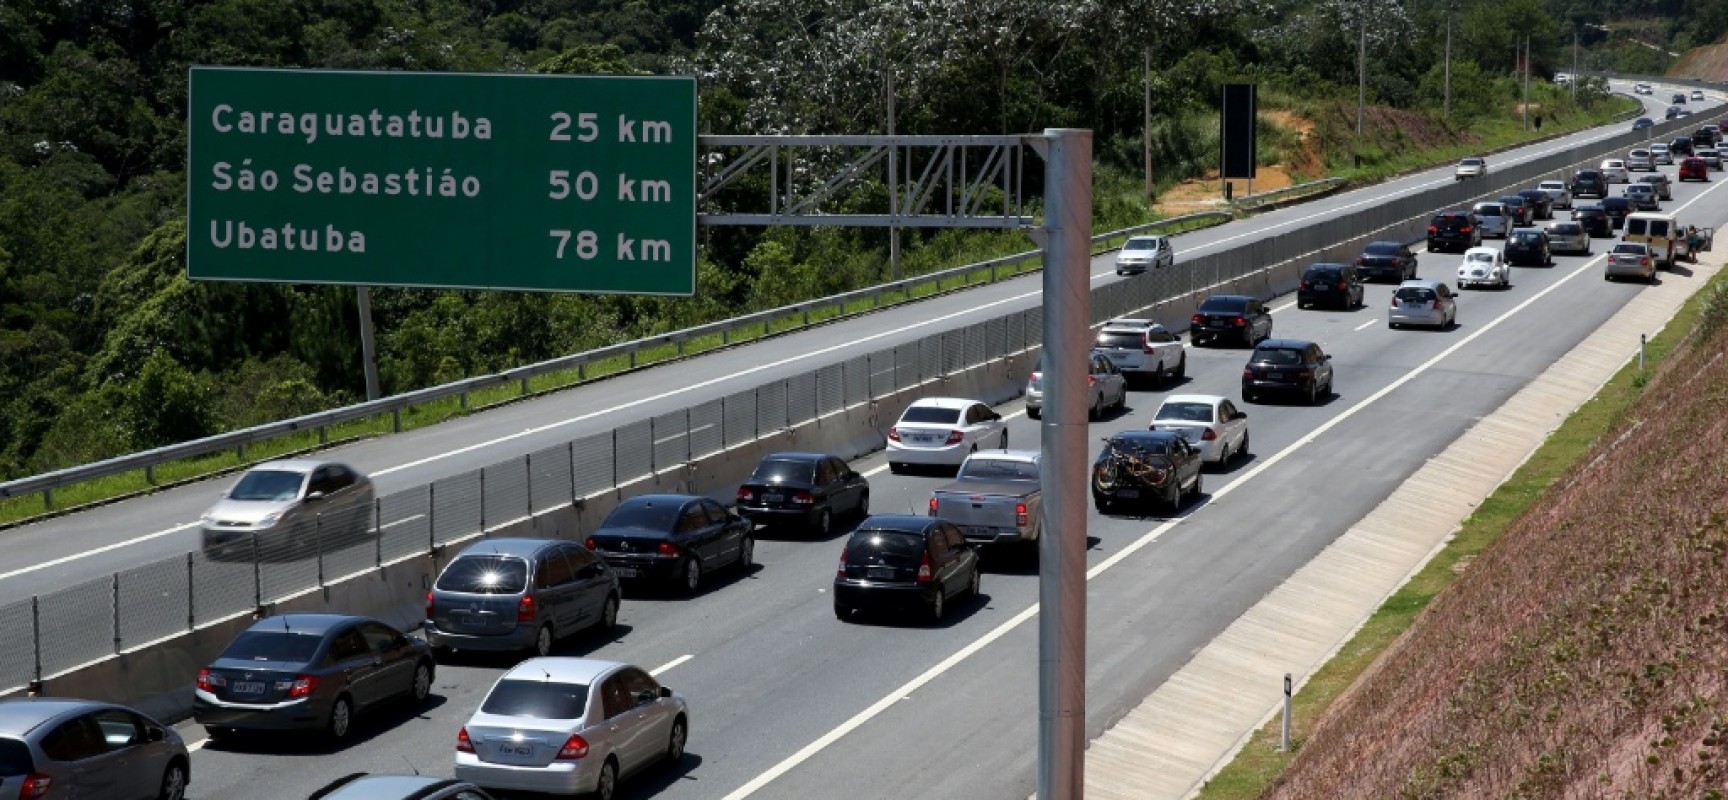 Começa Operação Verão nas rodovias concedidas do Estado de São Paulo